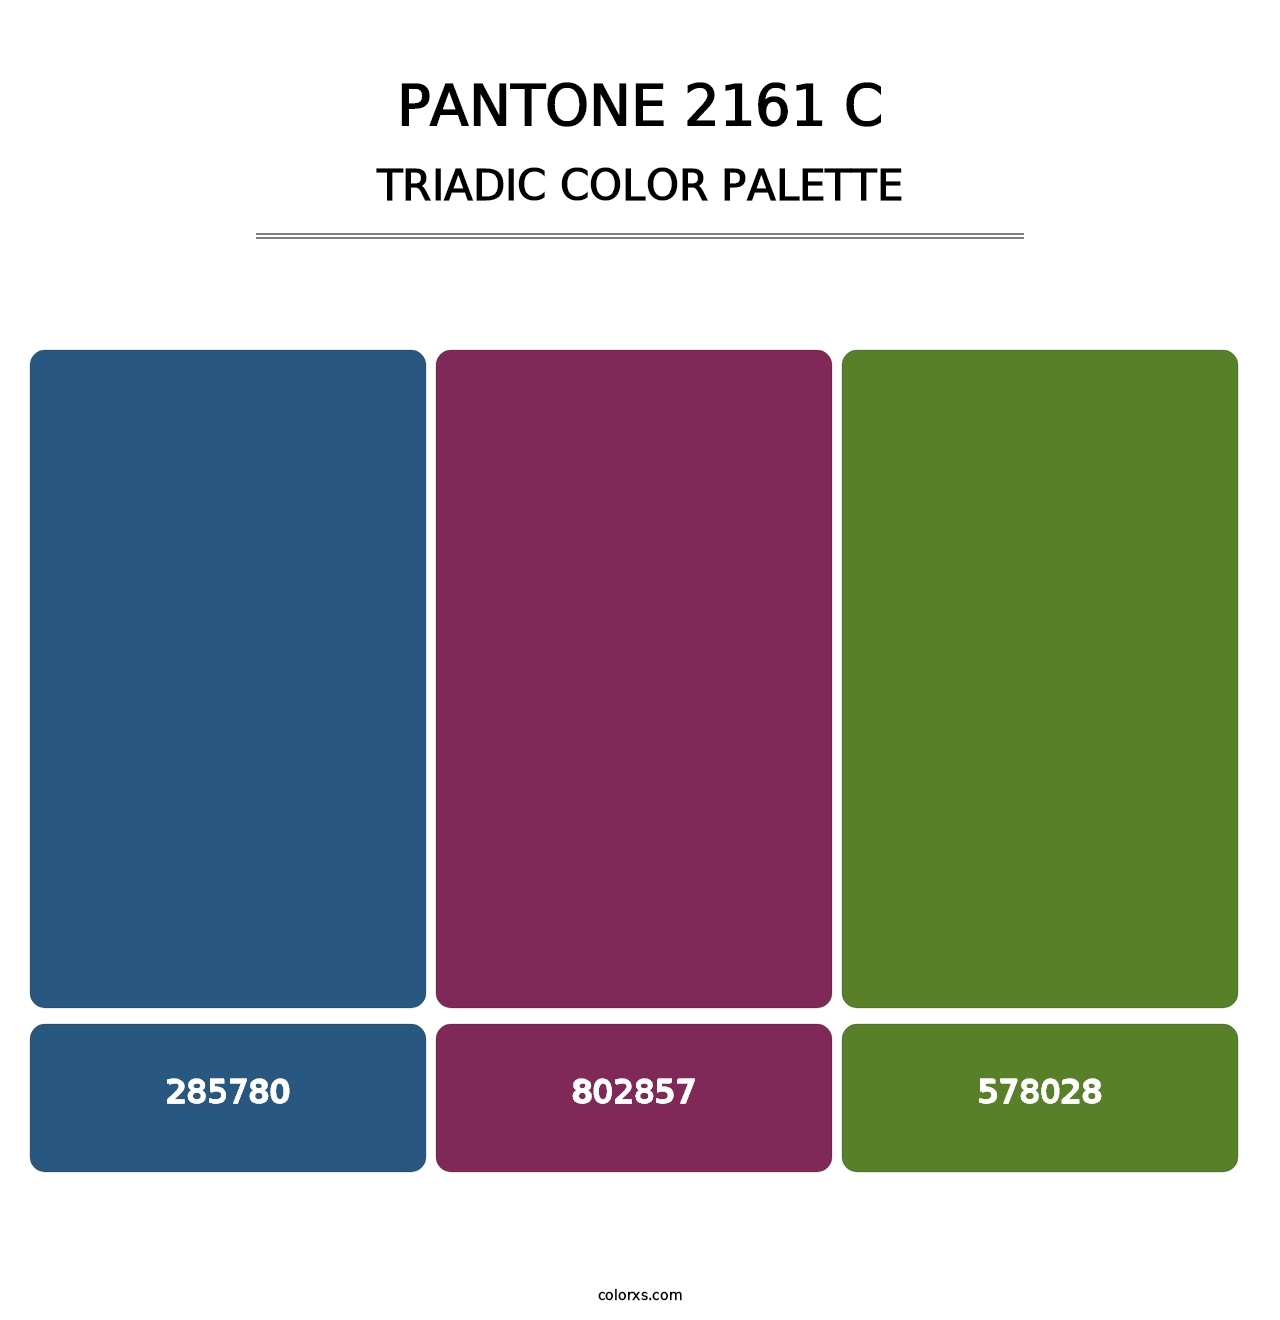 PANTONE 2161 C - Triadic Color Palette